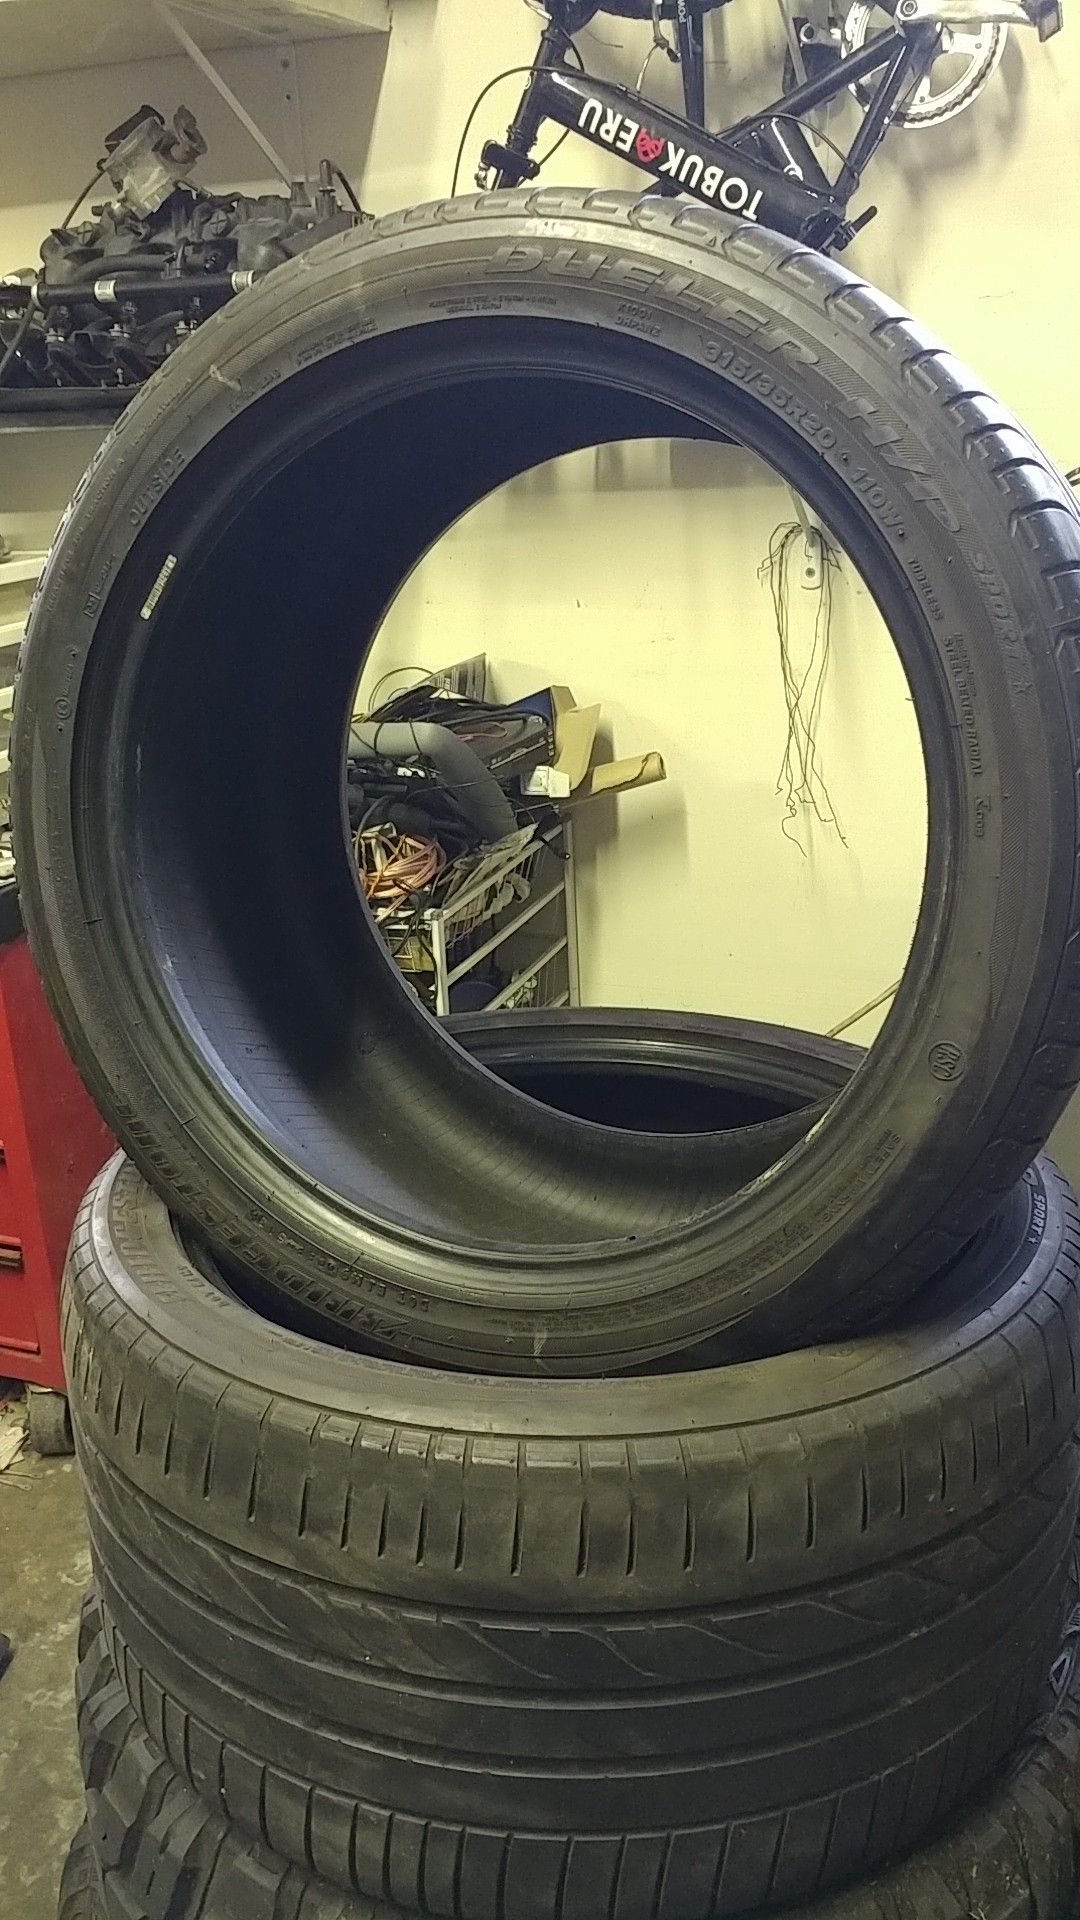 2 20 in Bridgestone sport tires